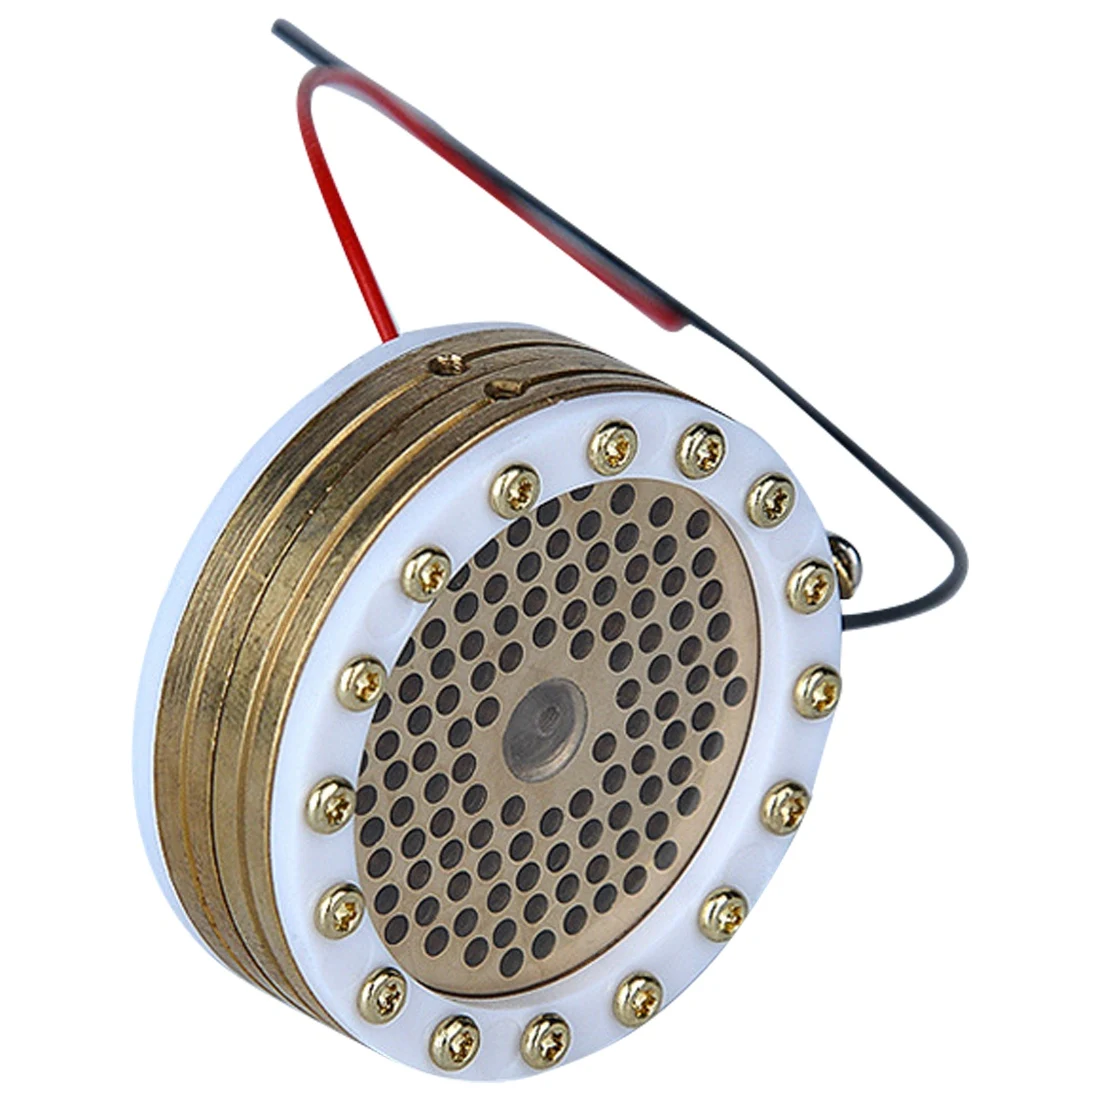 

34 mm Diameter Microphone Large Diaphragm Cartridge Core Capsule for Studio Recording Condenser Mic